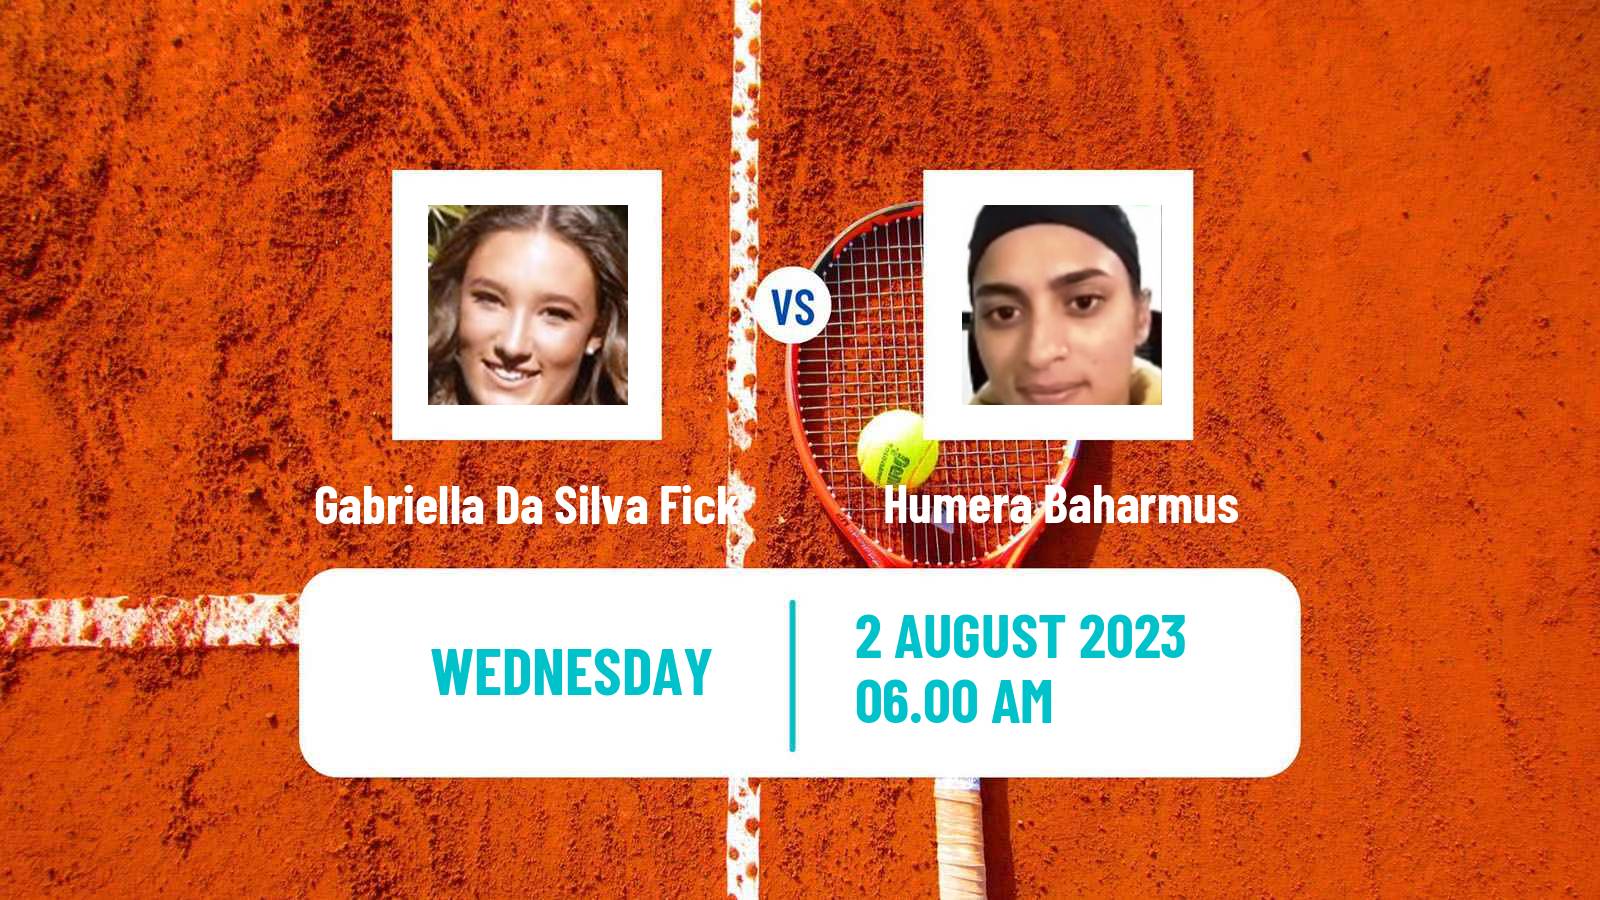 Tennis ITF W25 Foxhills Women Gabriella Da Silva Fick - Humera Baharmus